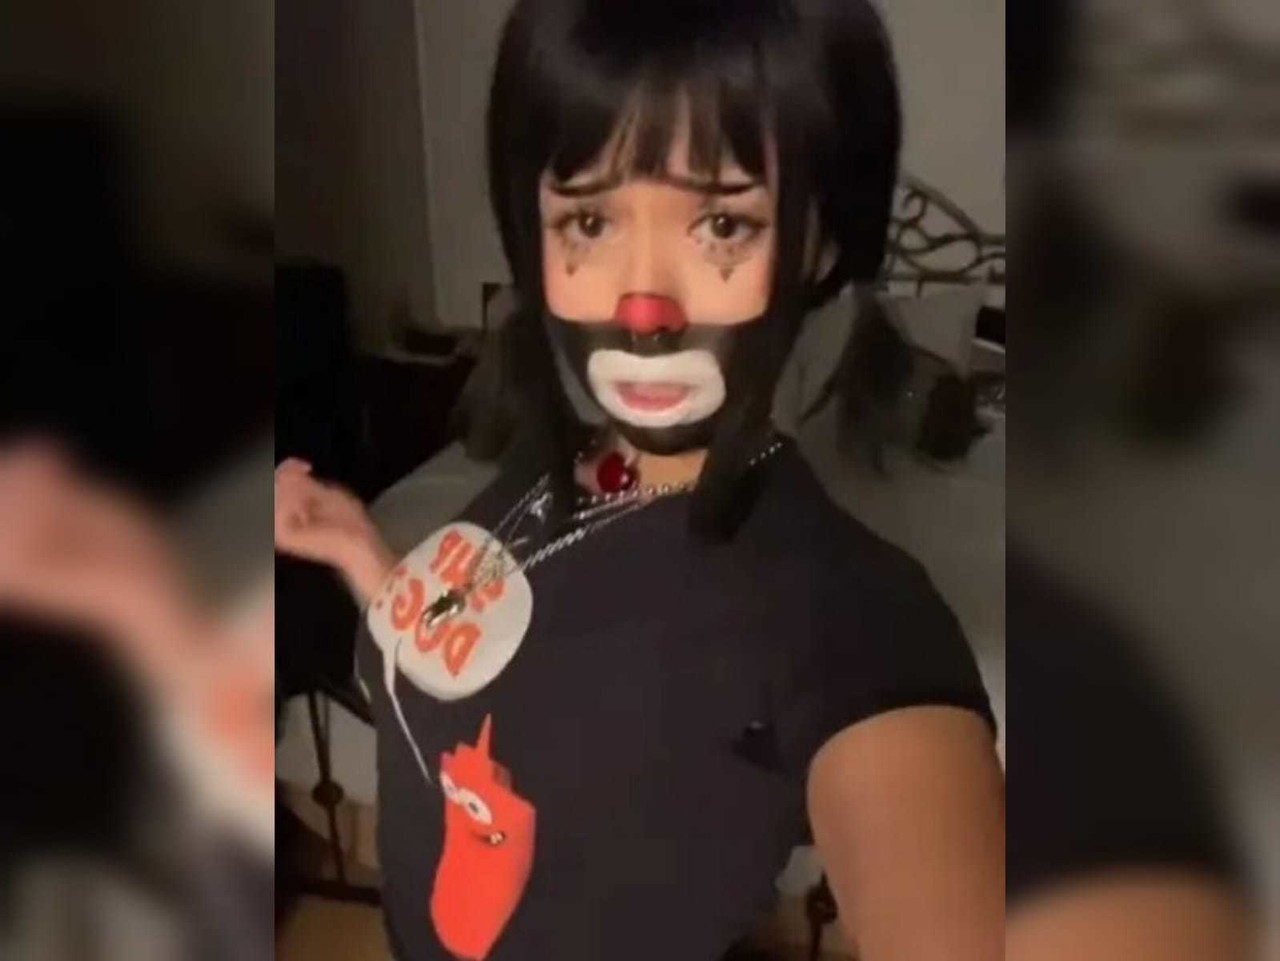 La tiktoker compartió varios videos en su perfil donde se le observa maquillada con medio rostro de color negro, labios blancos y nariz roja. Foto: TikTok.